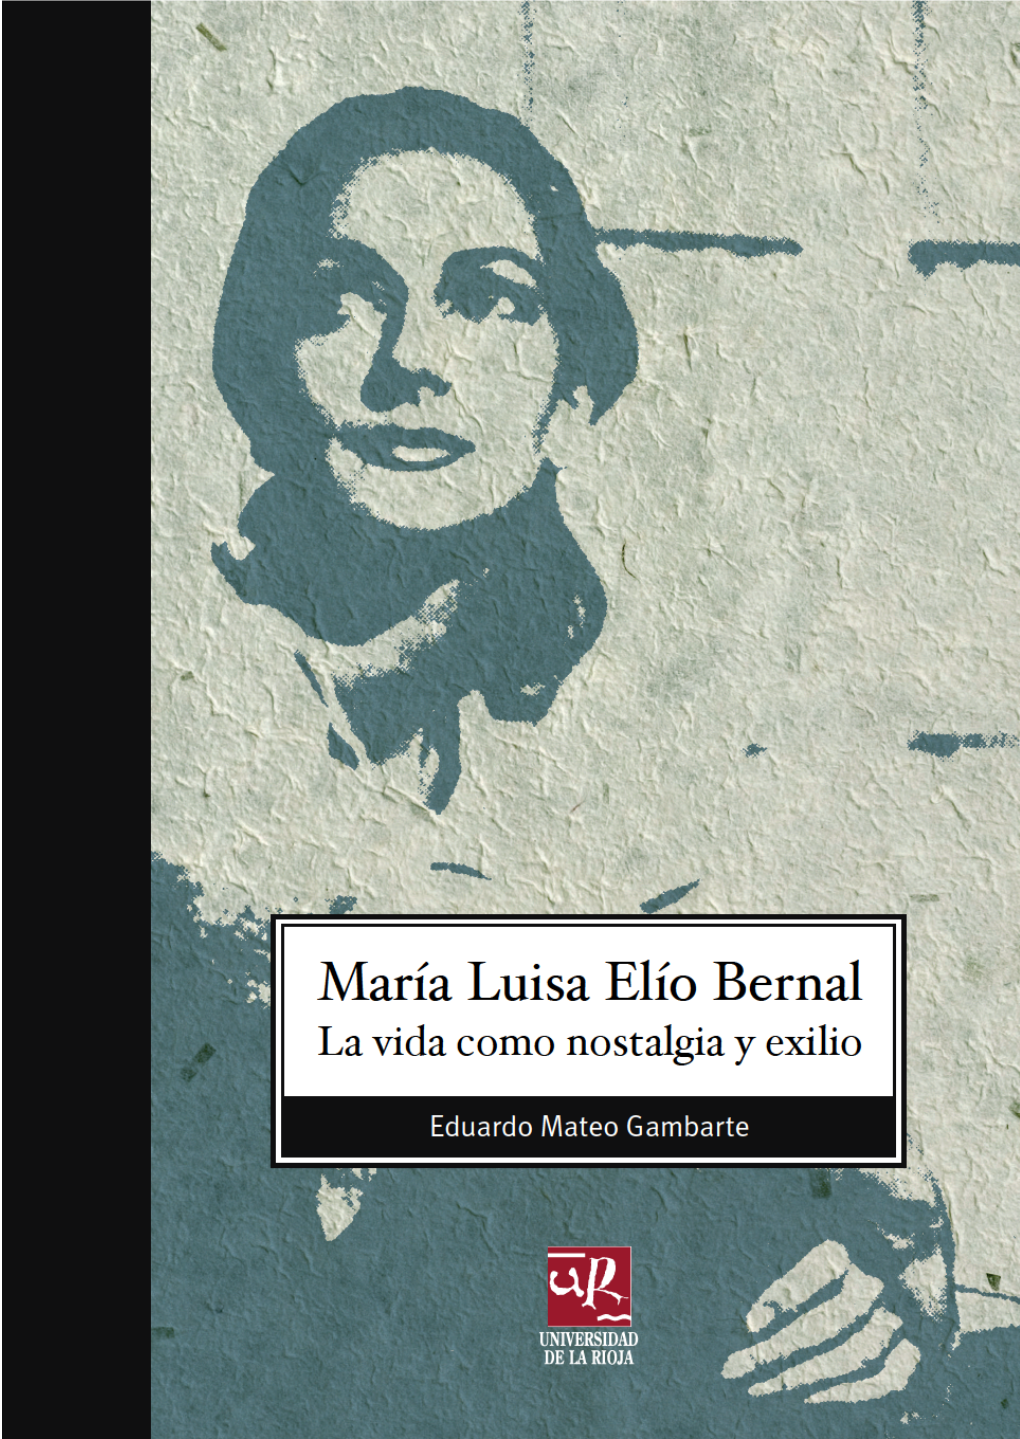 MARÍA LUISA ELÍO BERNAL: LA VIDA COMO NOSTALGIA Y EXILIO BIBLIOTECA DE INVESTIGACIÓN Nº 56 EDUARDO MATEO GAMBARTE